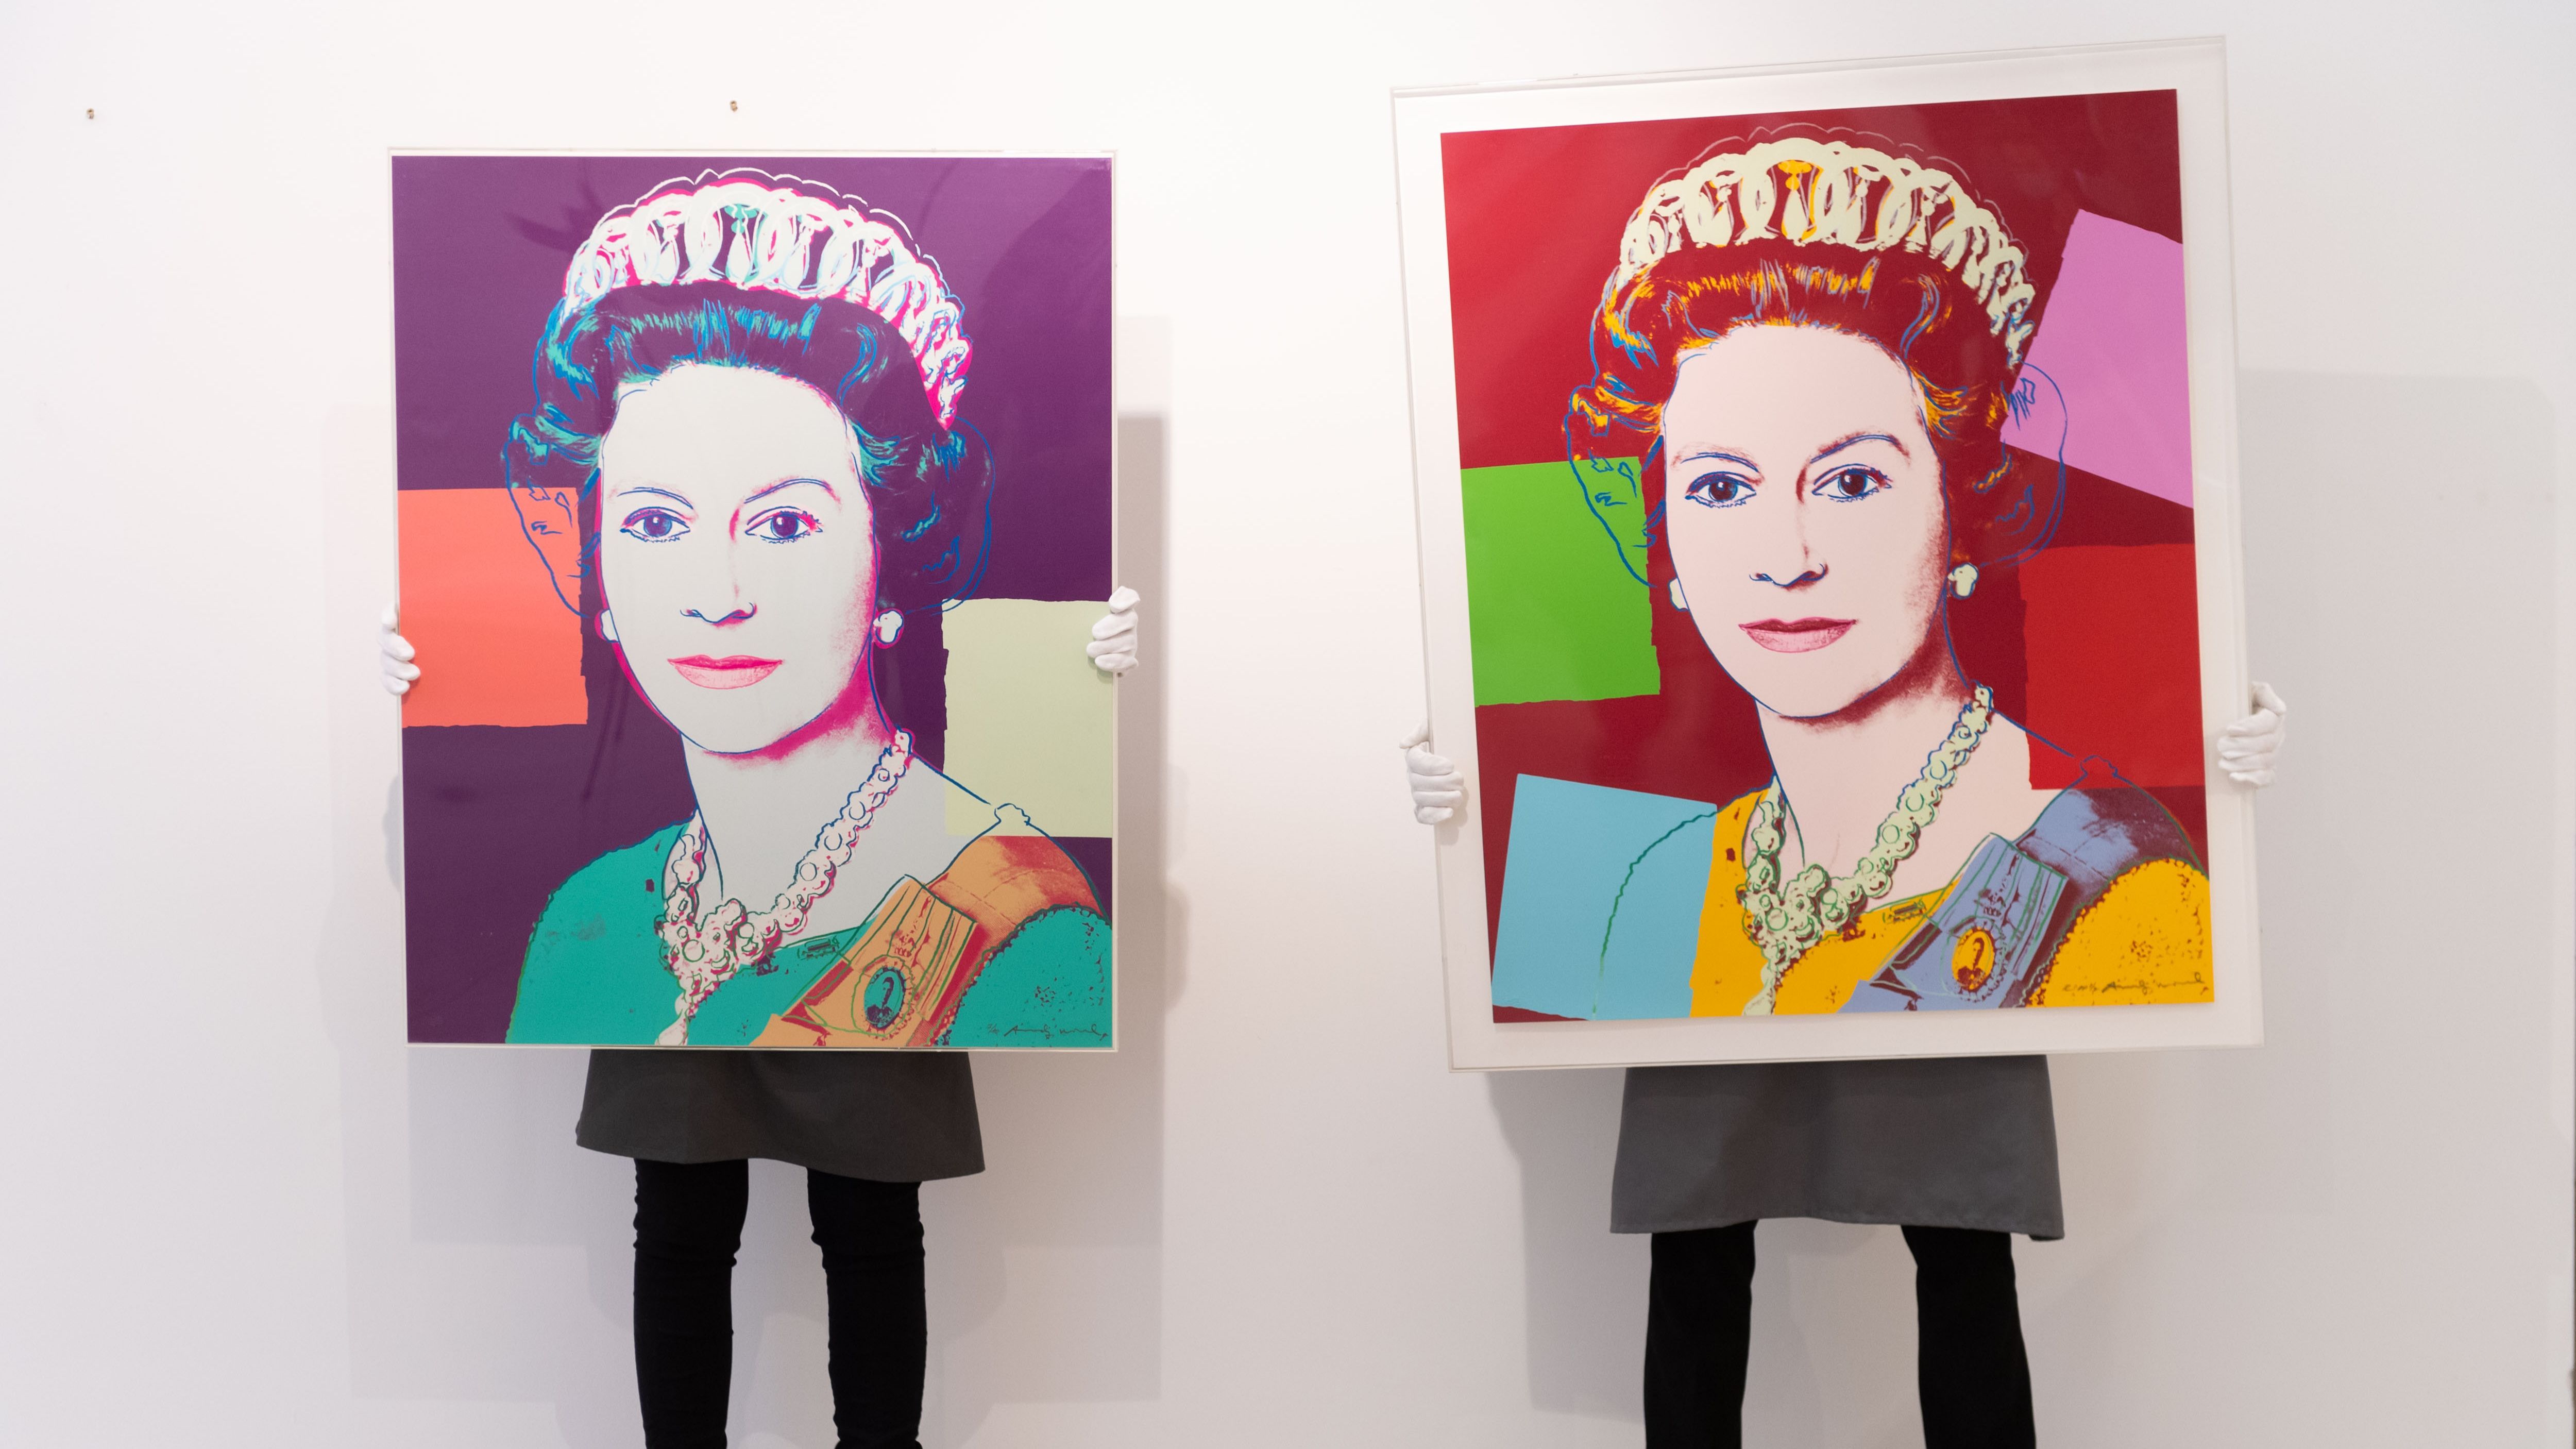 La reina Isabel II de Inglaterra, un icono de la cultura y el siglo pop